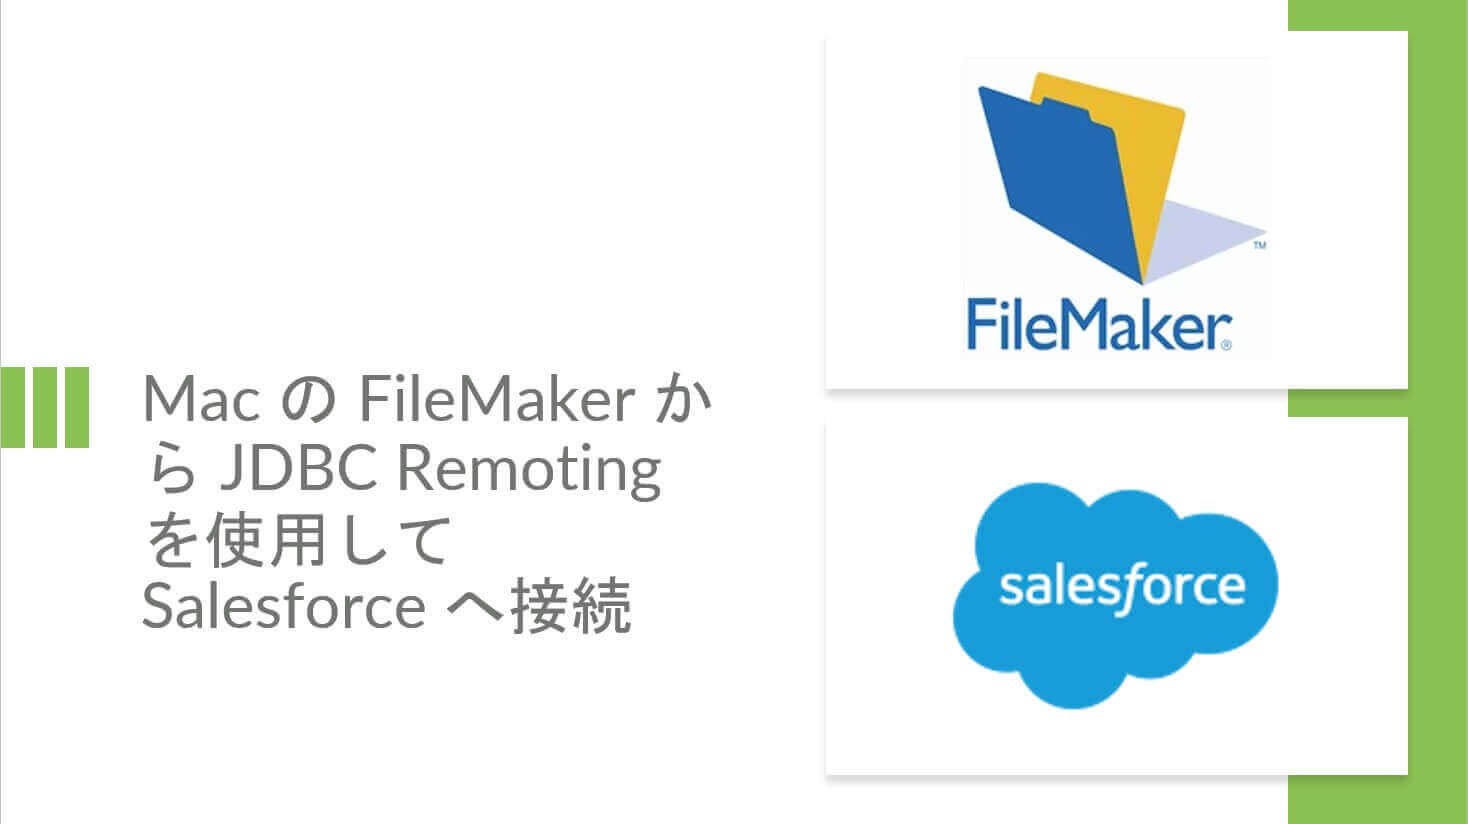 Mac の FileMaker から JDBC Remoting を使用してSalesforce へ接続